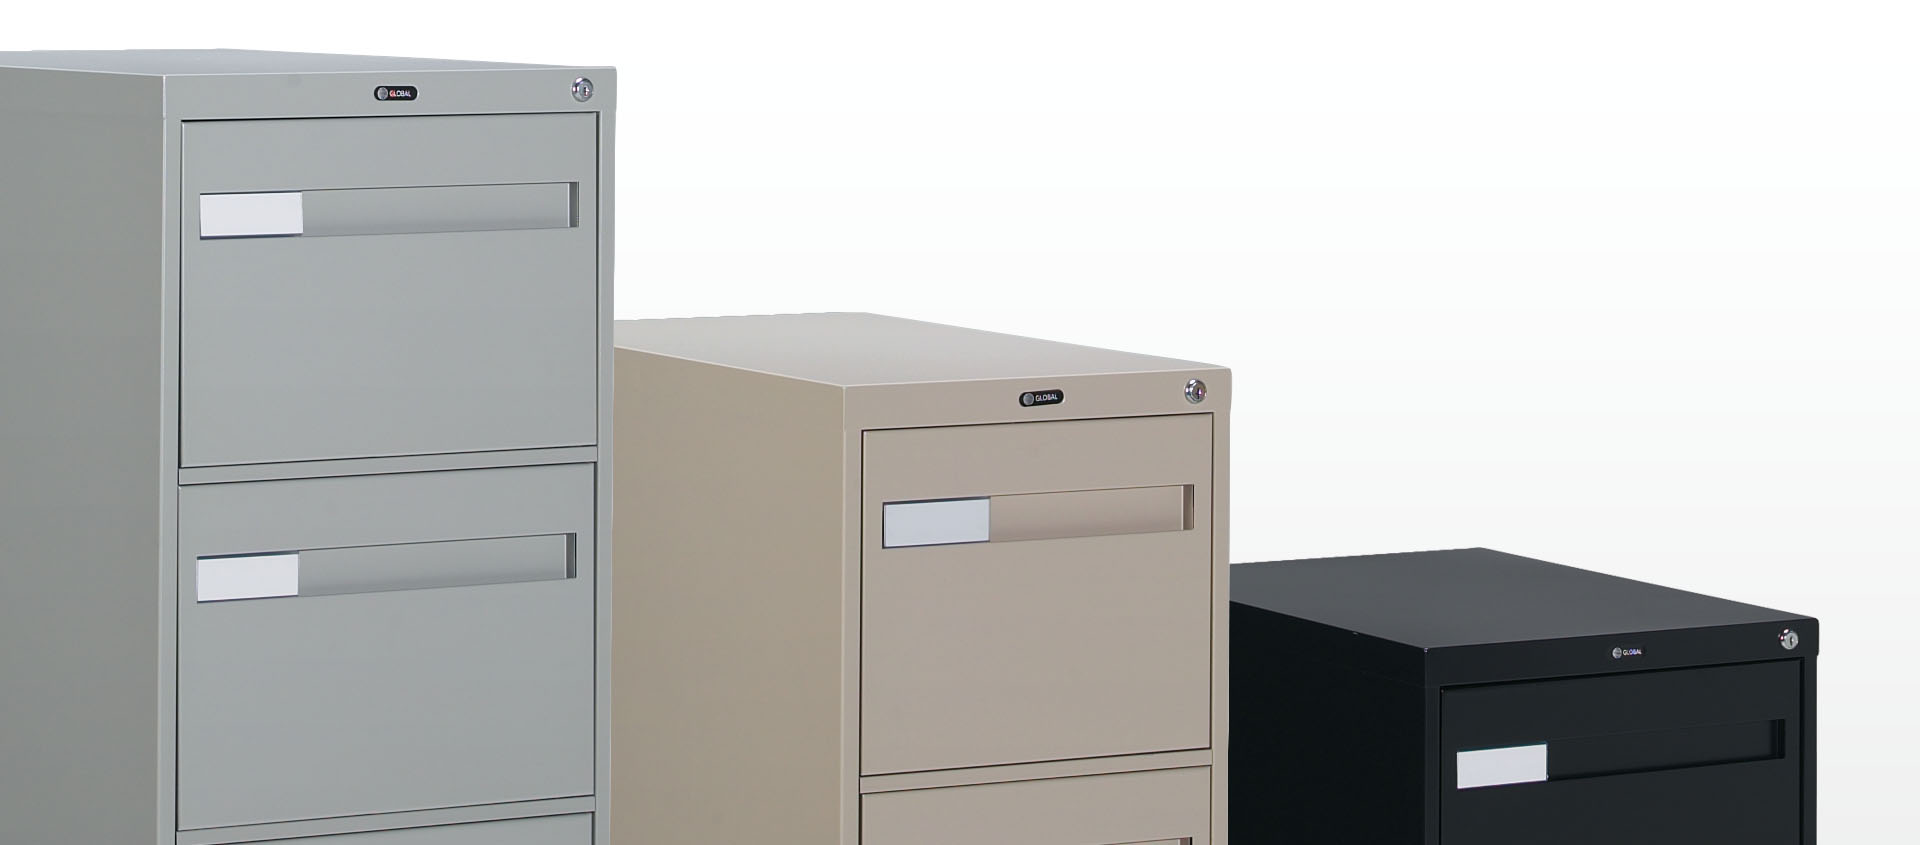 钢制文件柜|文件柜系列|办公家具|中国有限公司官家具|Meridian 2600 Plus 文件柜系列